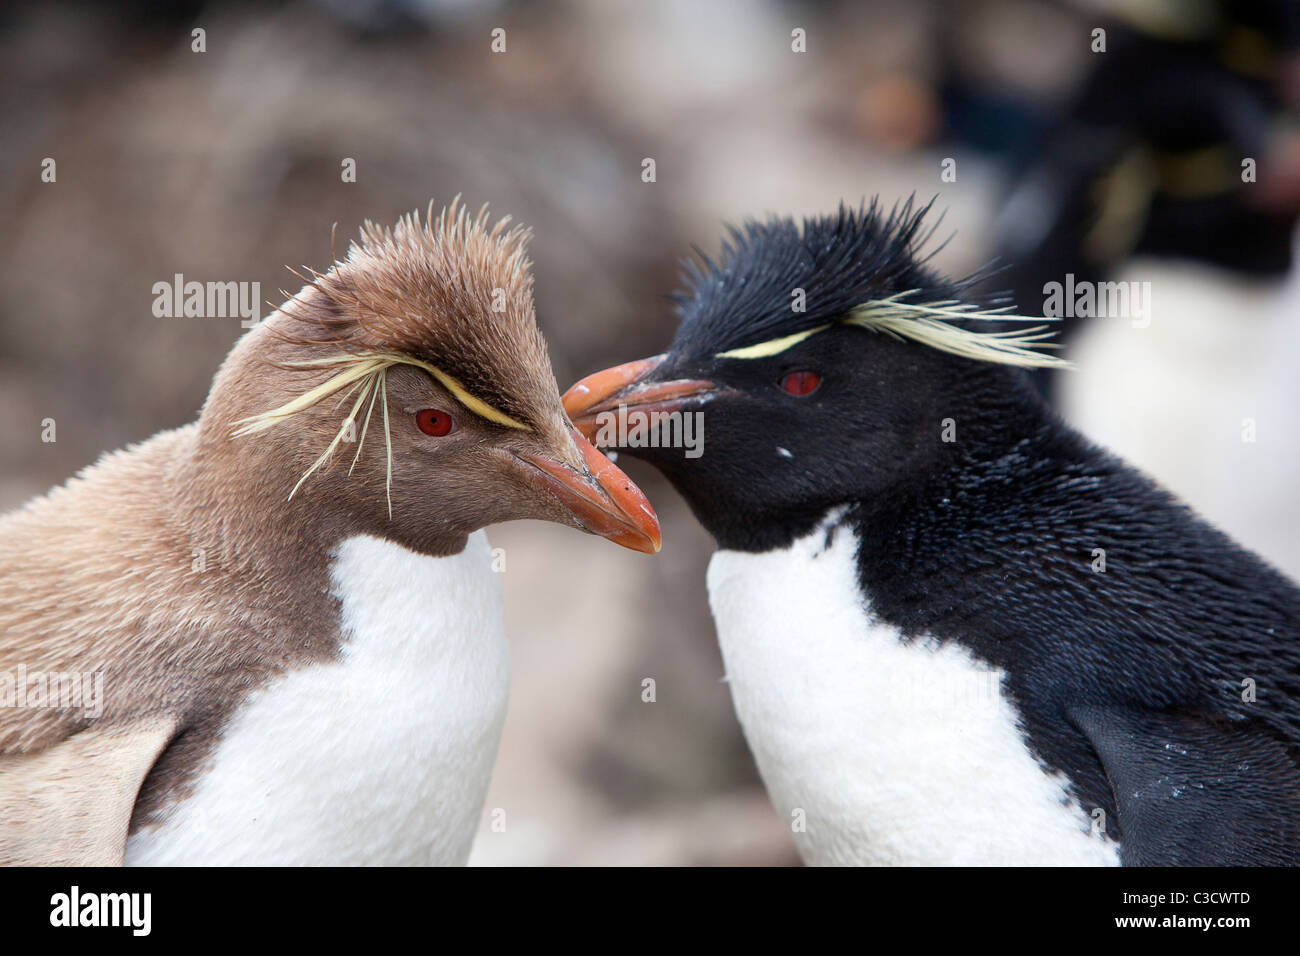 Leucistic Rockhopper Penguin (Eudyptes chrysocome chrysocome) debout à côté d'une personne en couleurs normales Banque D'Images